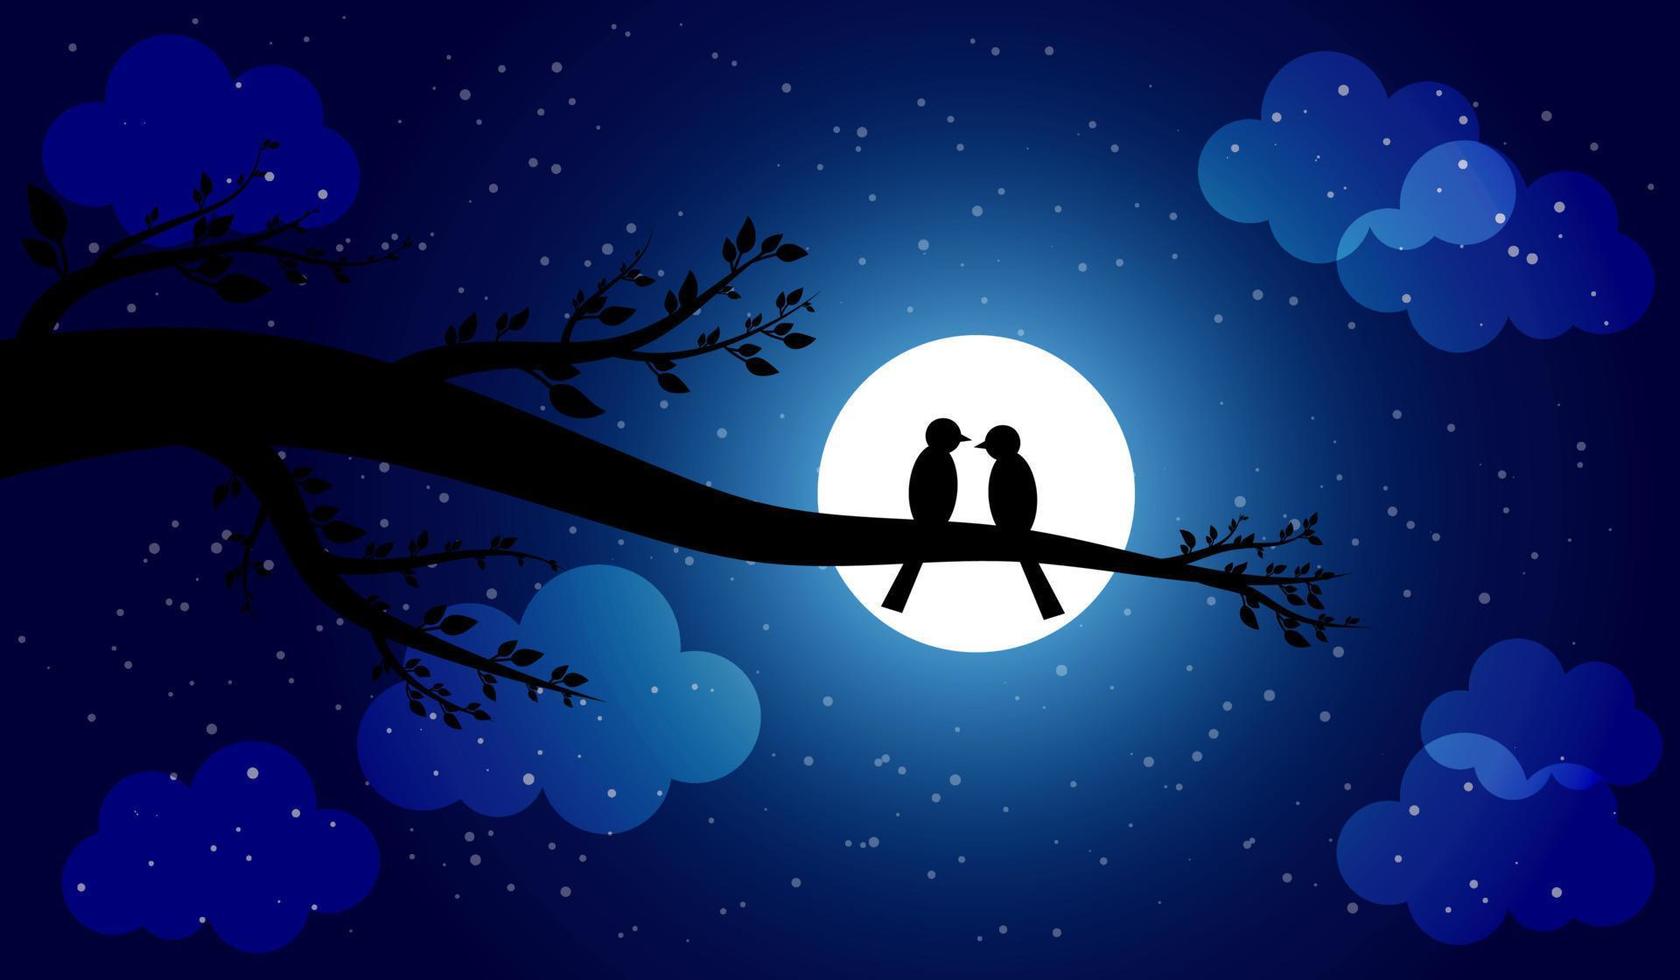 deux oiseaux s'assoient ensemble sur une branche par une sombre nuit étoilée au clair de lune vecteur